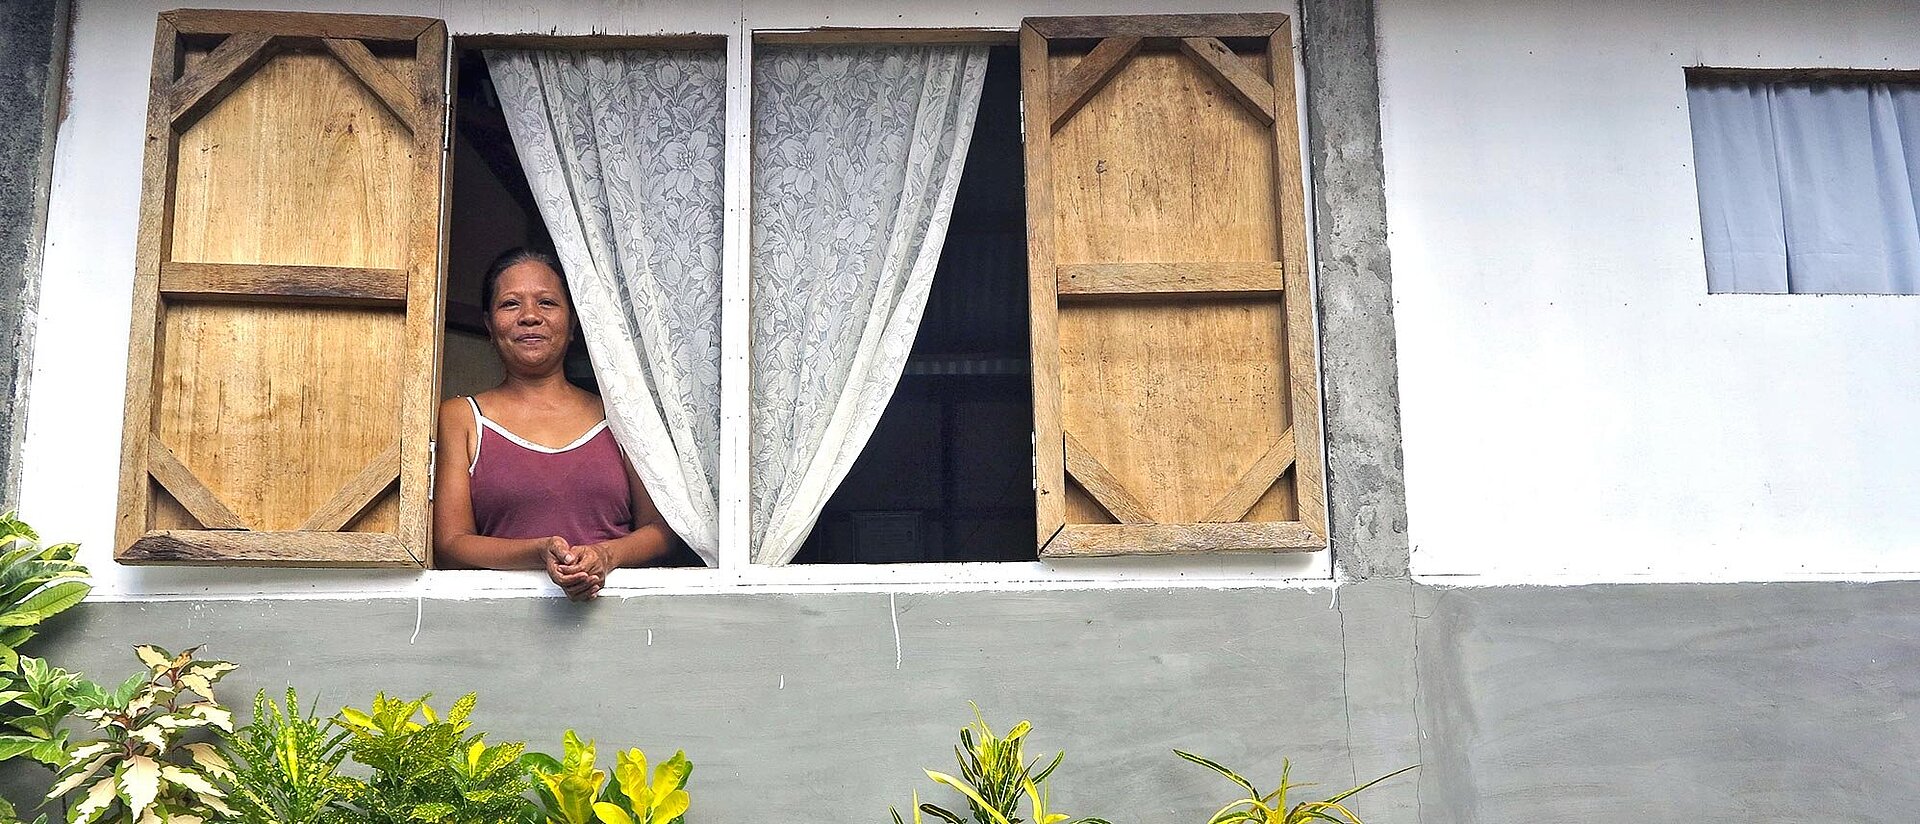 Philippinin schaut aus Fenster